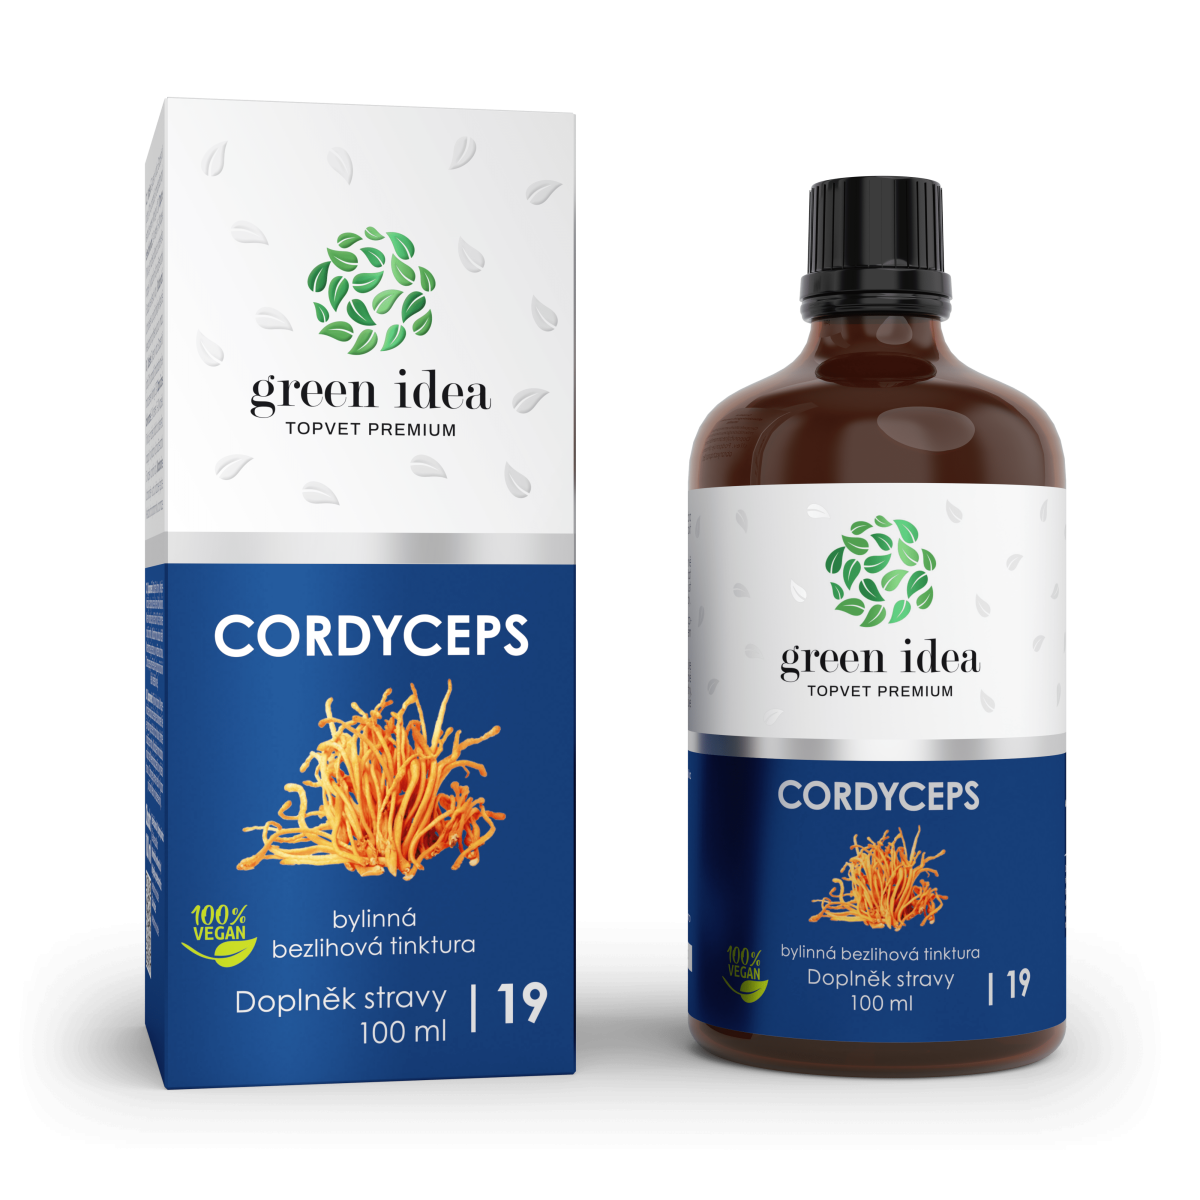 GREEN IDEA Cordyceps - bezlihová tinktura 100 ml